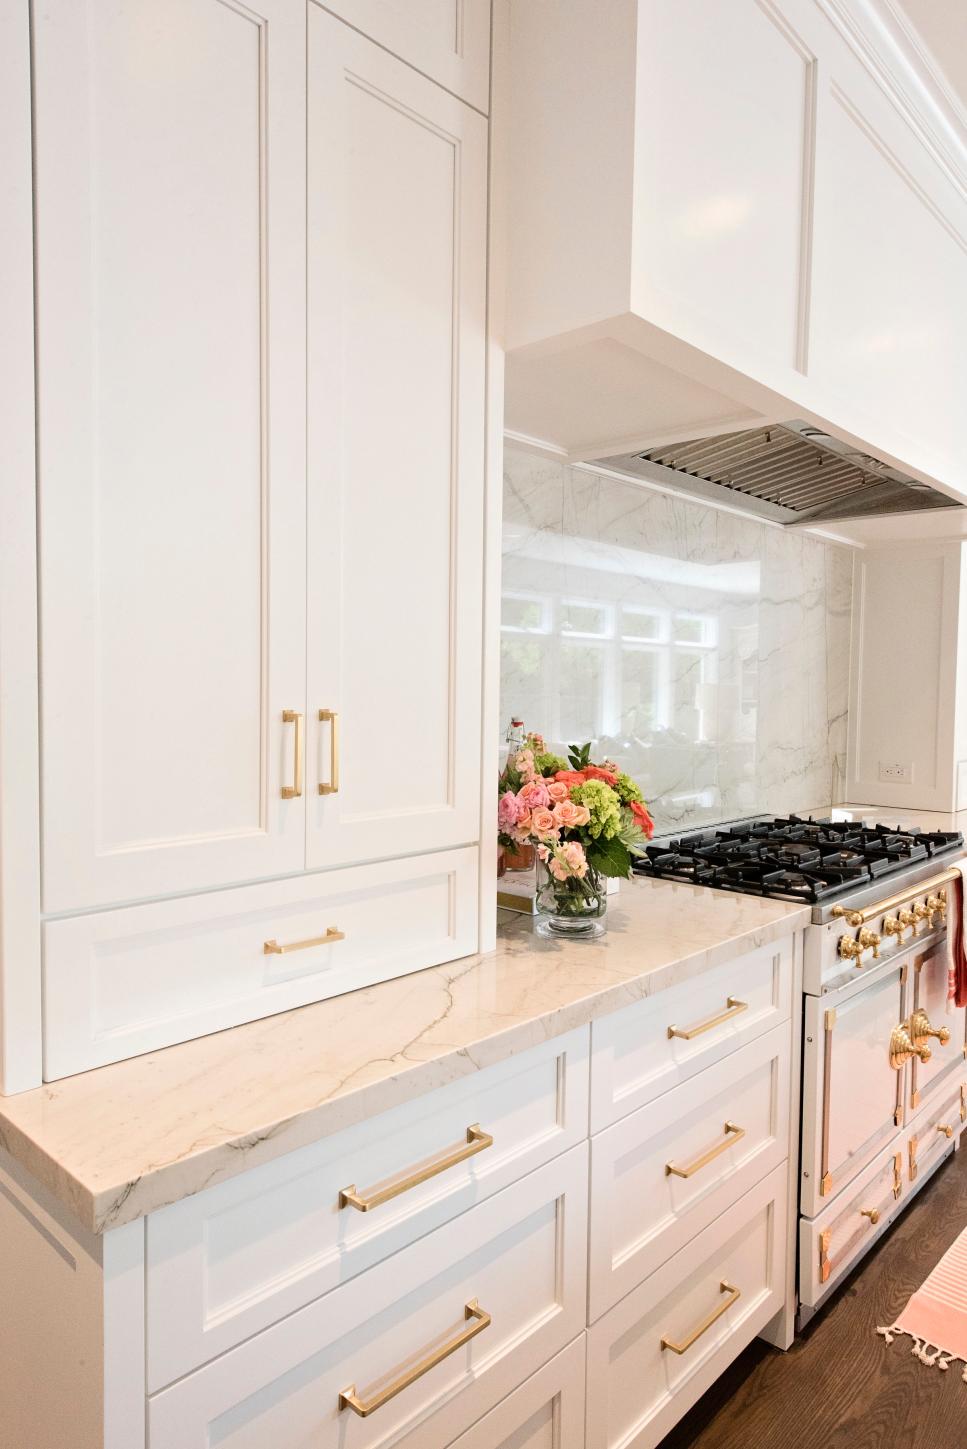 Kitchen Cabinets With Brass Hardware | HGTV